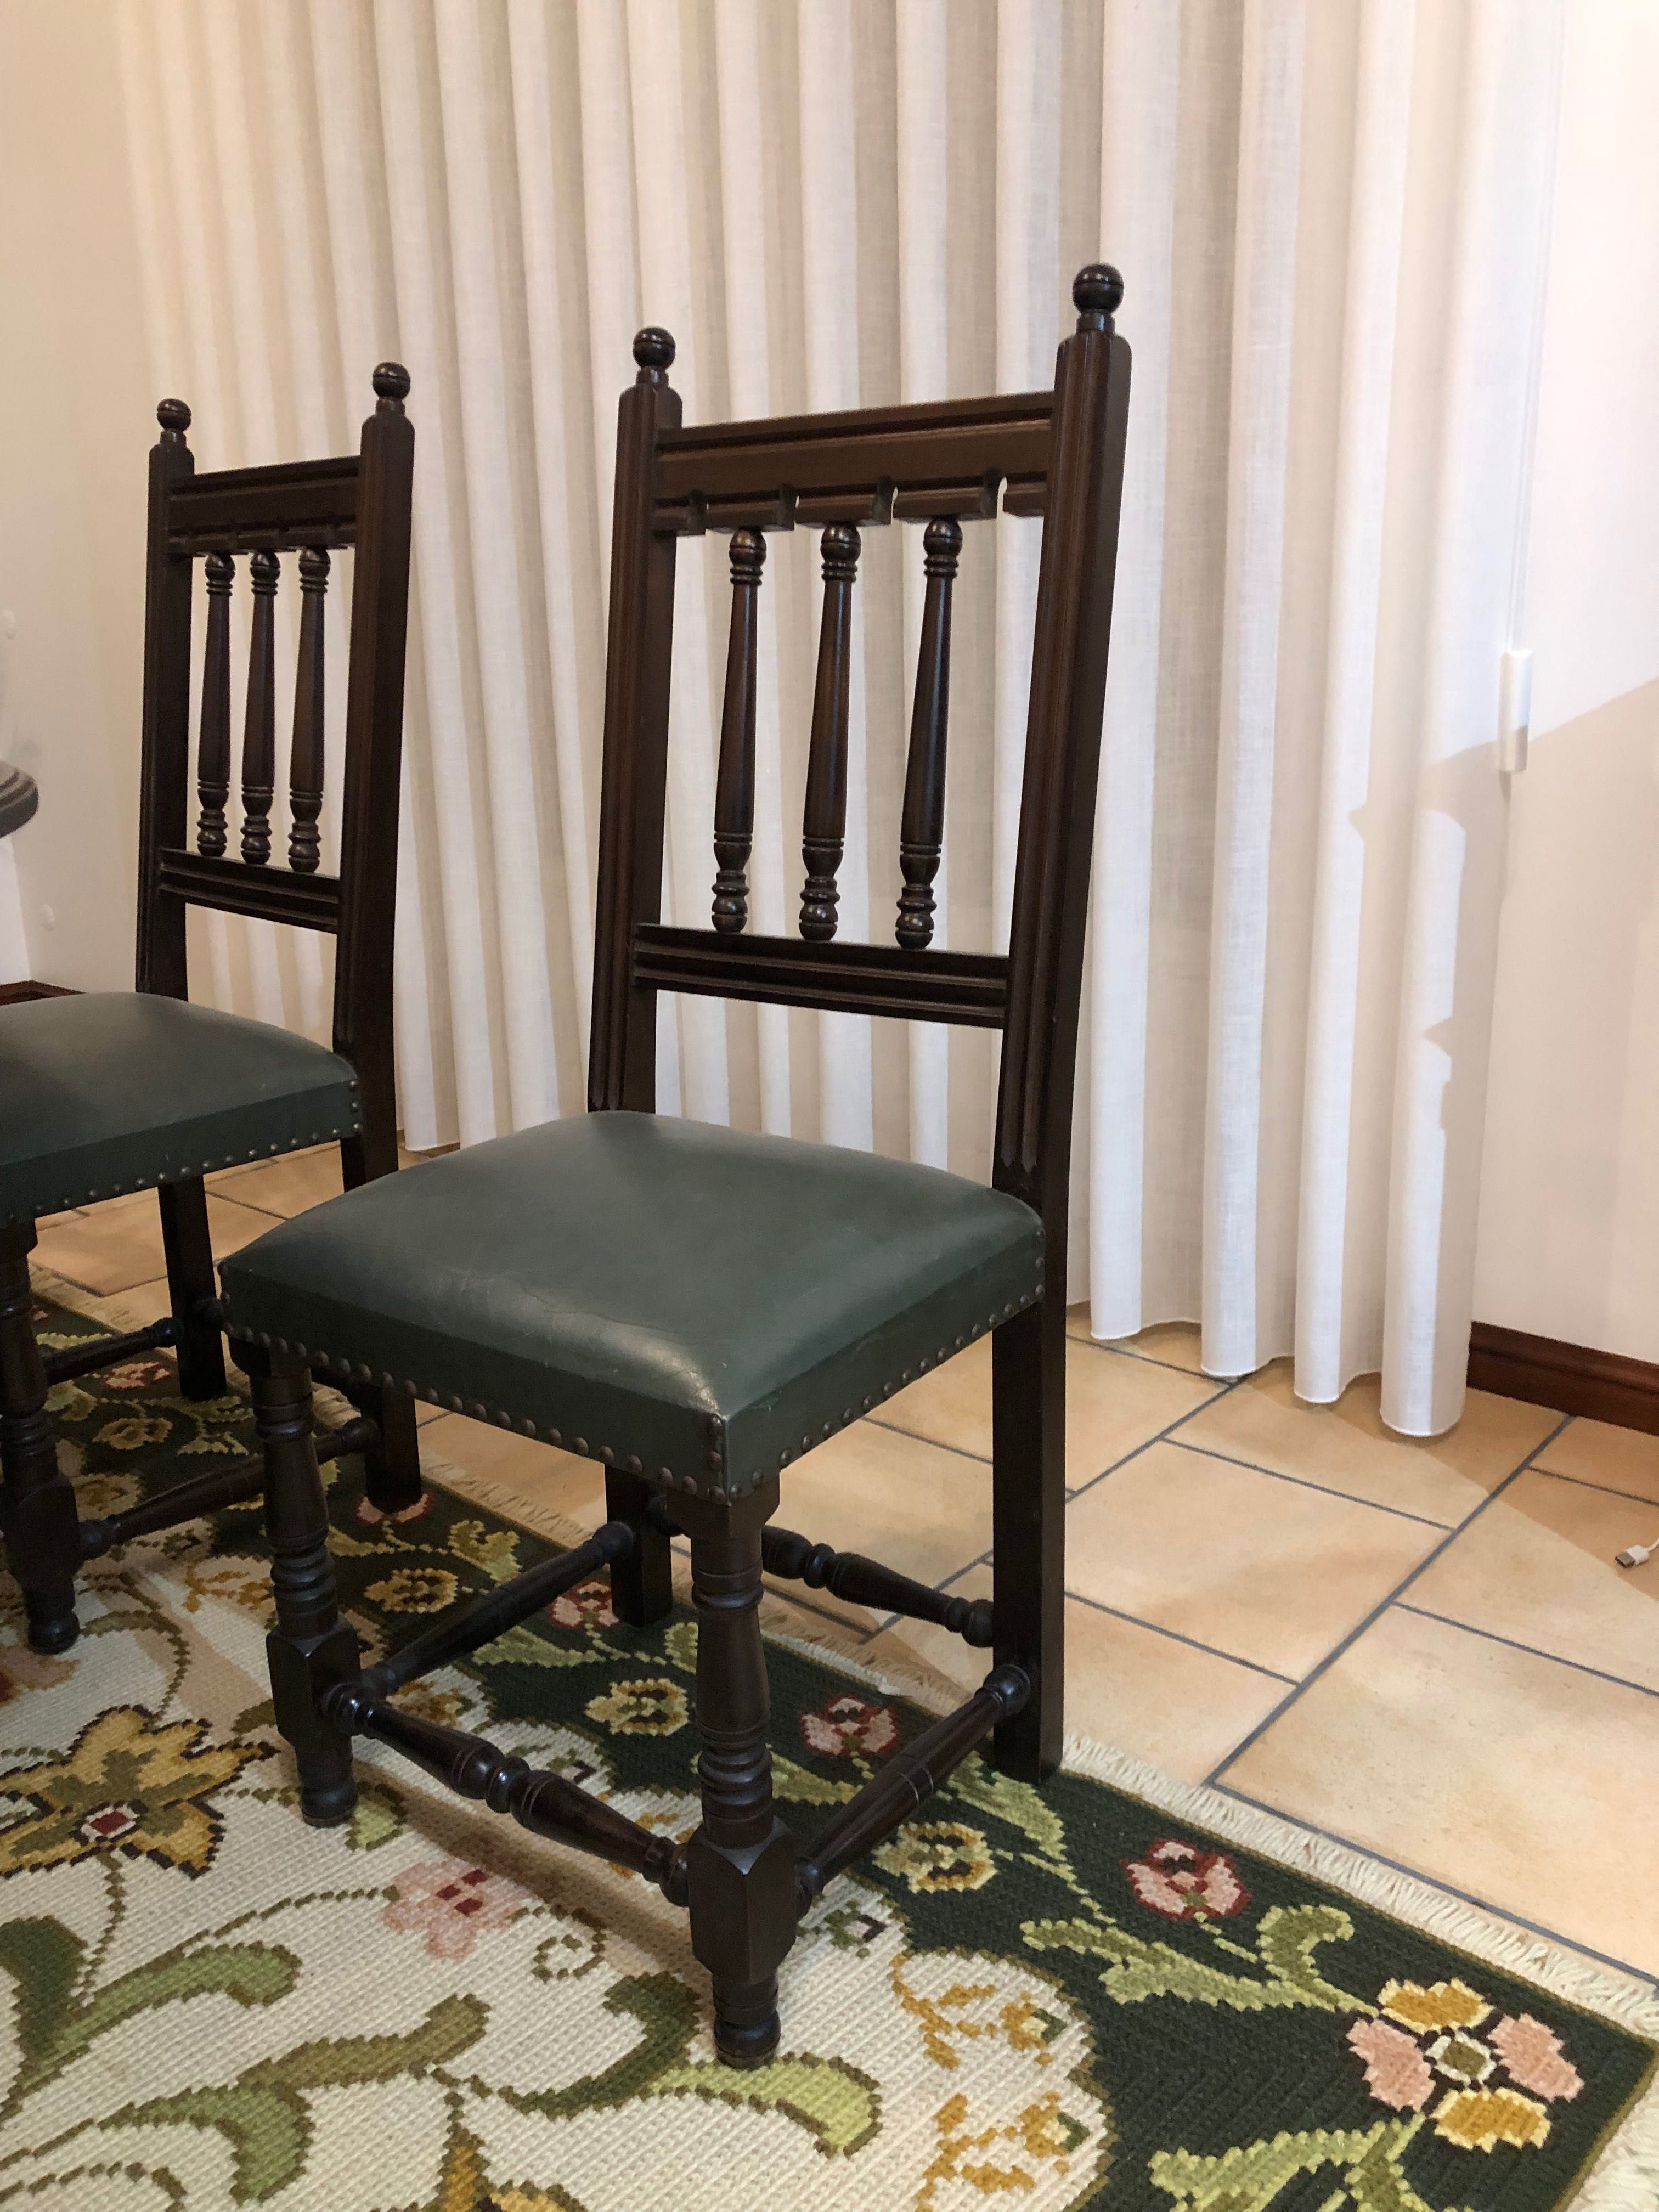 Conjunto de mesa e cadeiras